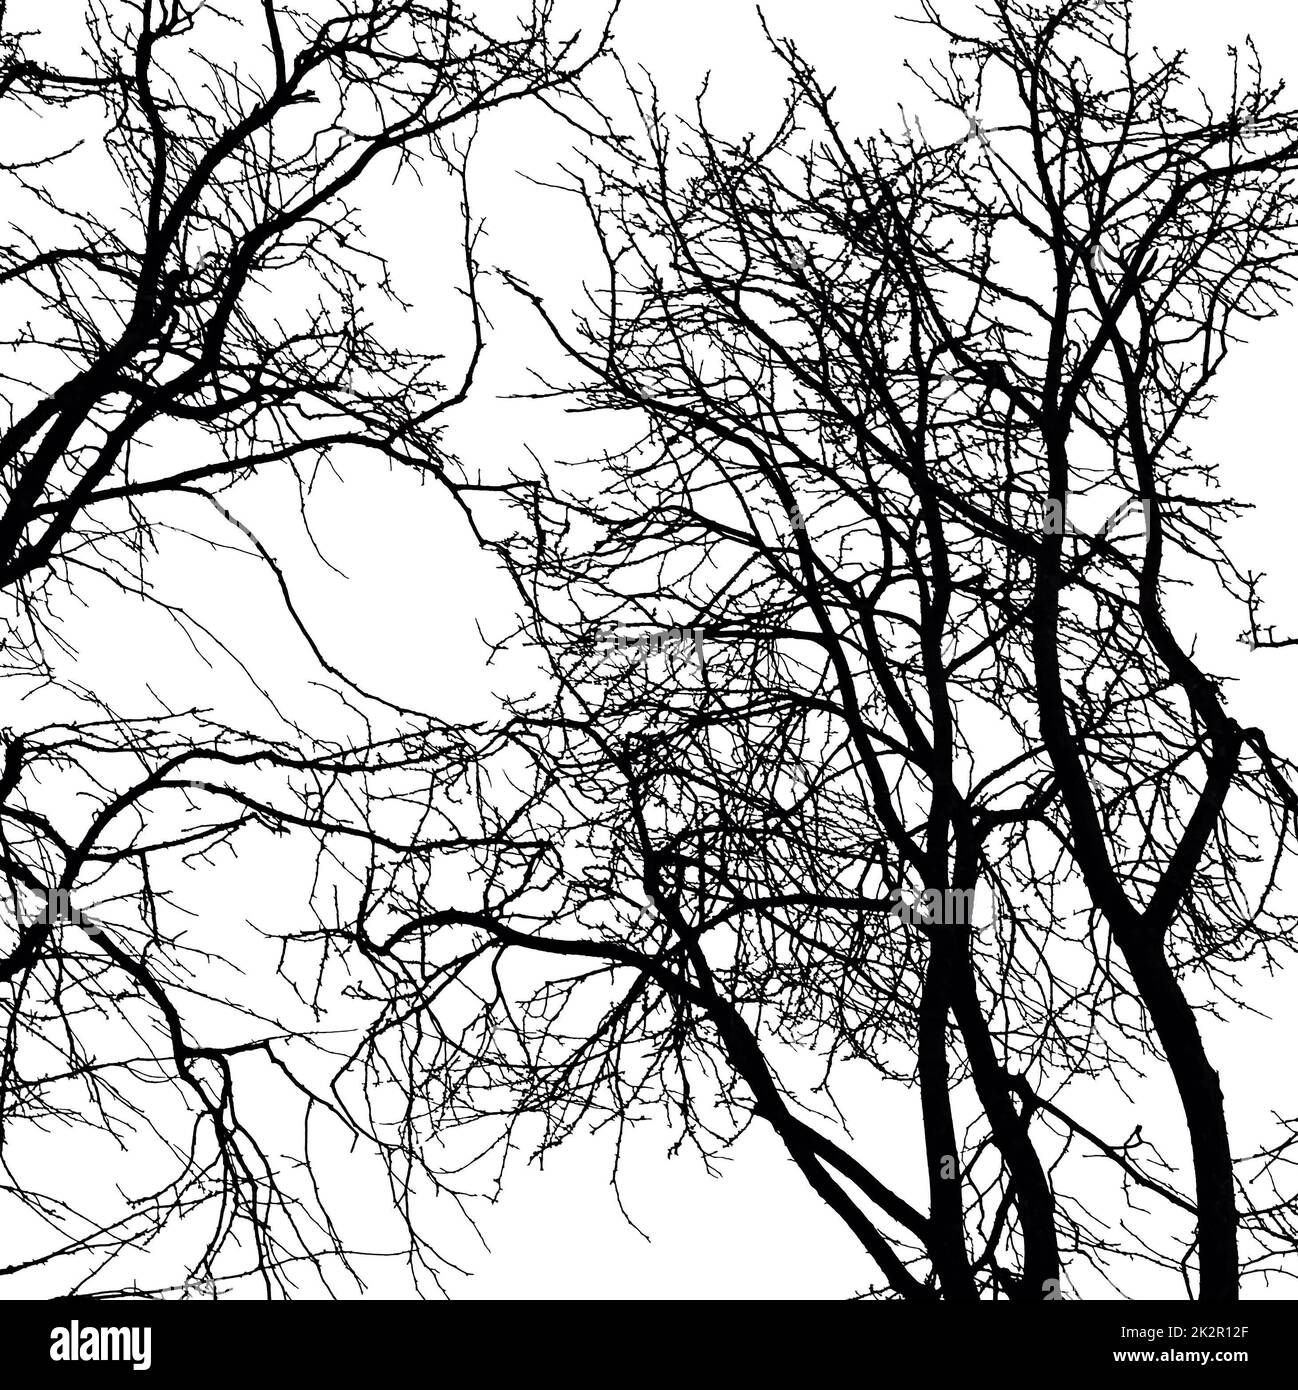 Immagini di alberi e cieli ispirate da Folk Horror. Foto Stock